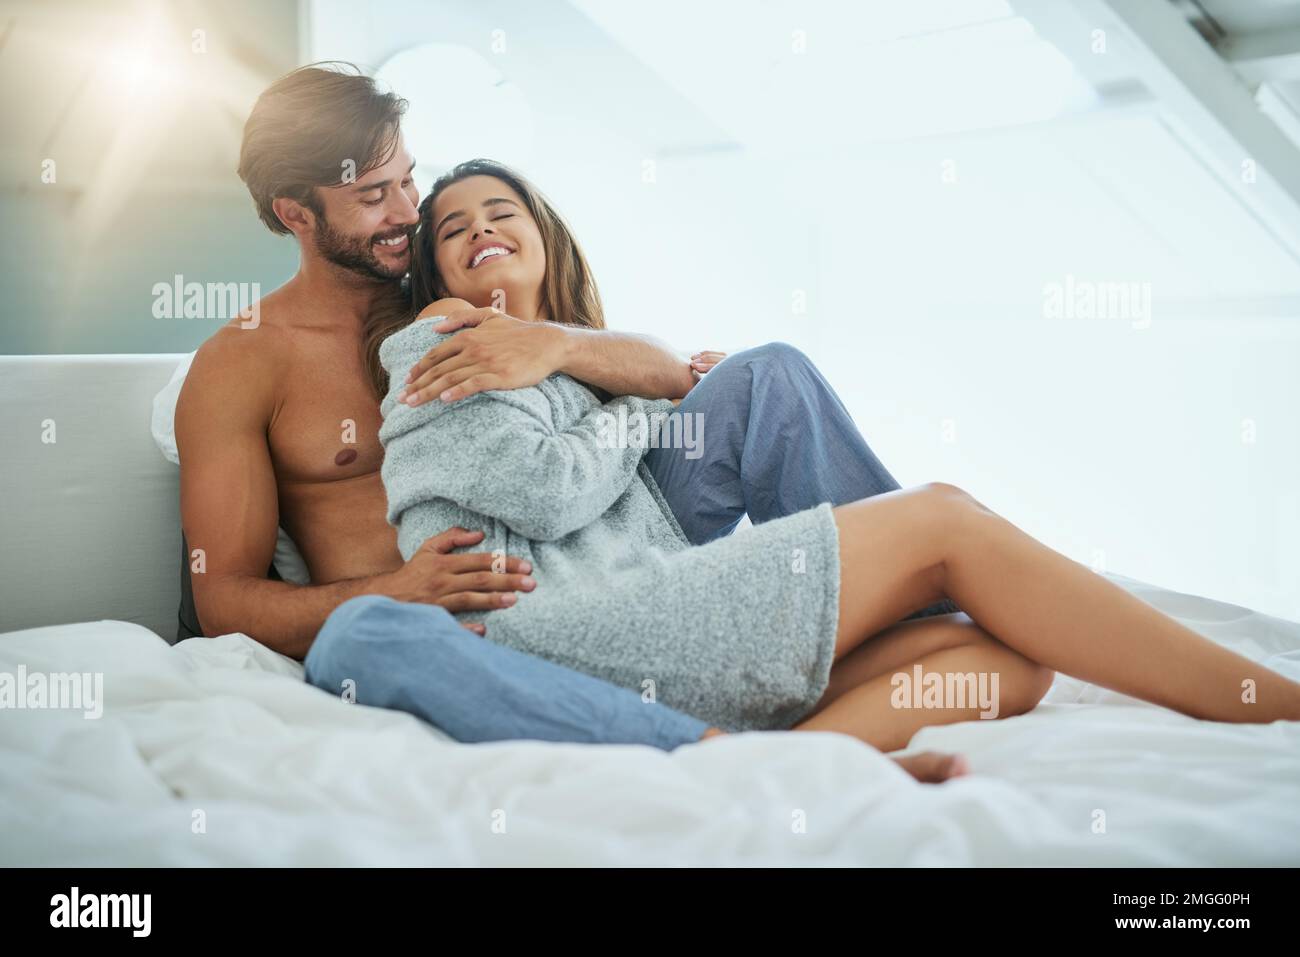 Teilen wir uns etwas Körperwärme. Ein liebevolles junges Paar, das einen intimen Moment im Bett teilt. Stockfoto